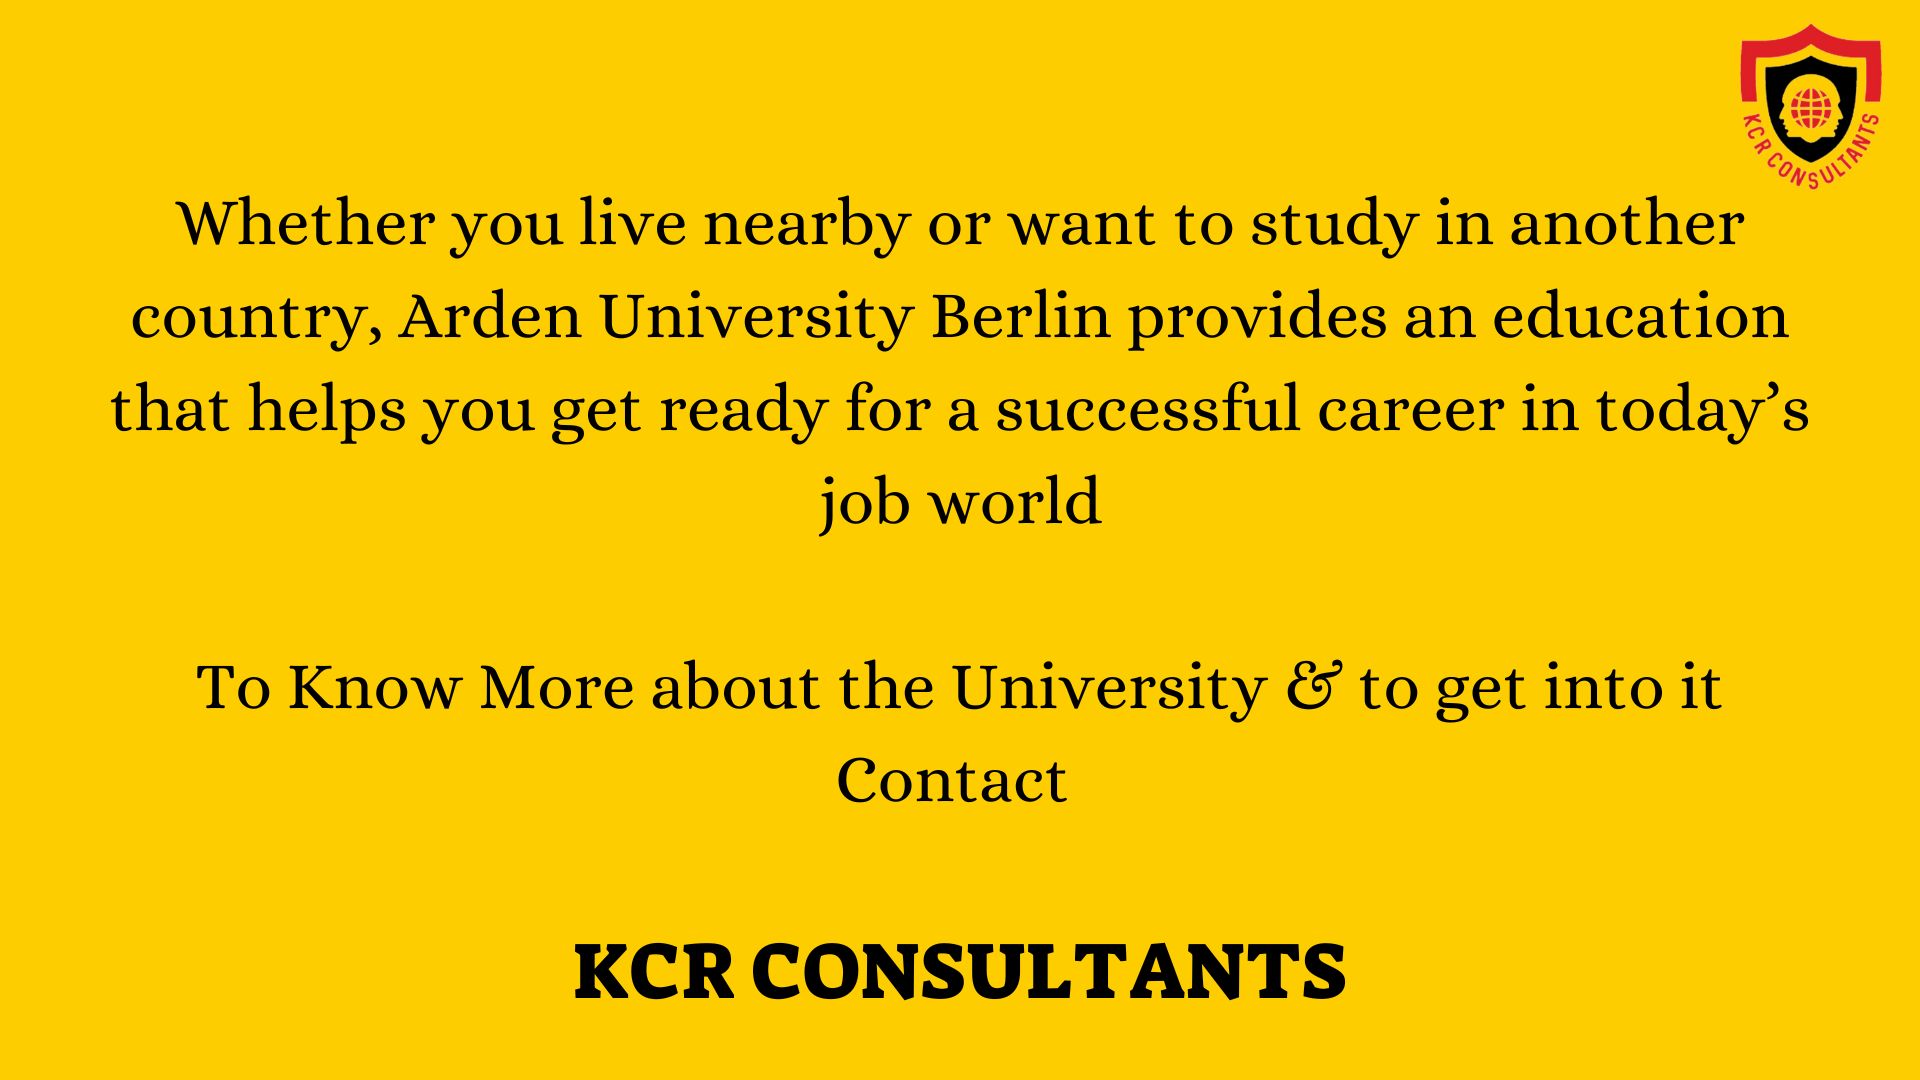 Arden University Berlin - KCR CONSULTANTS - Contact us